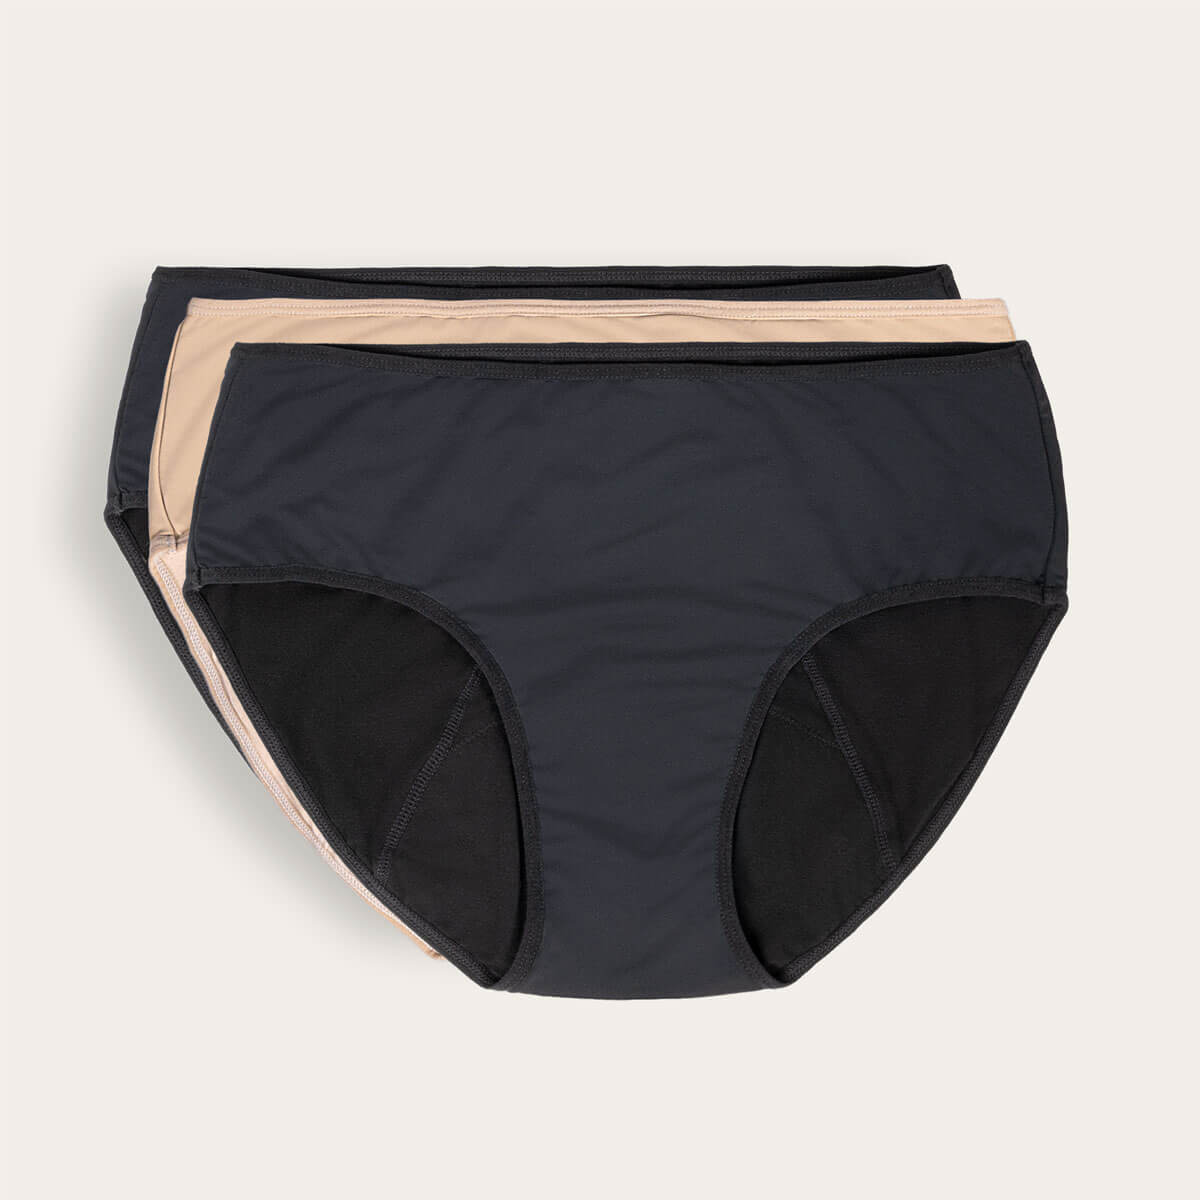 June Period Underwear - 3 Pack